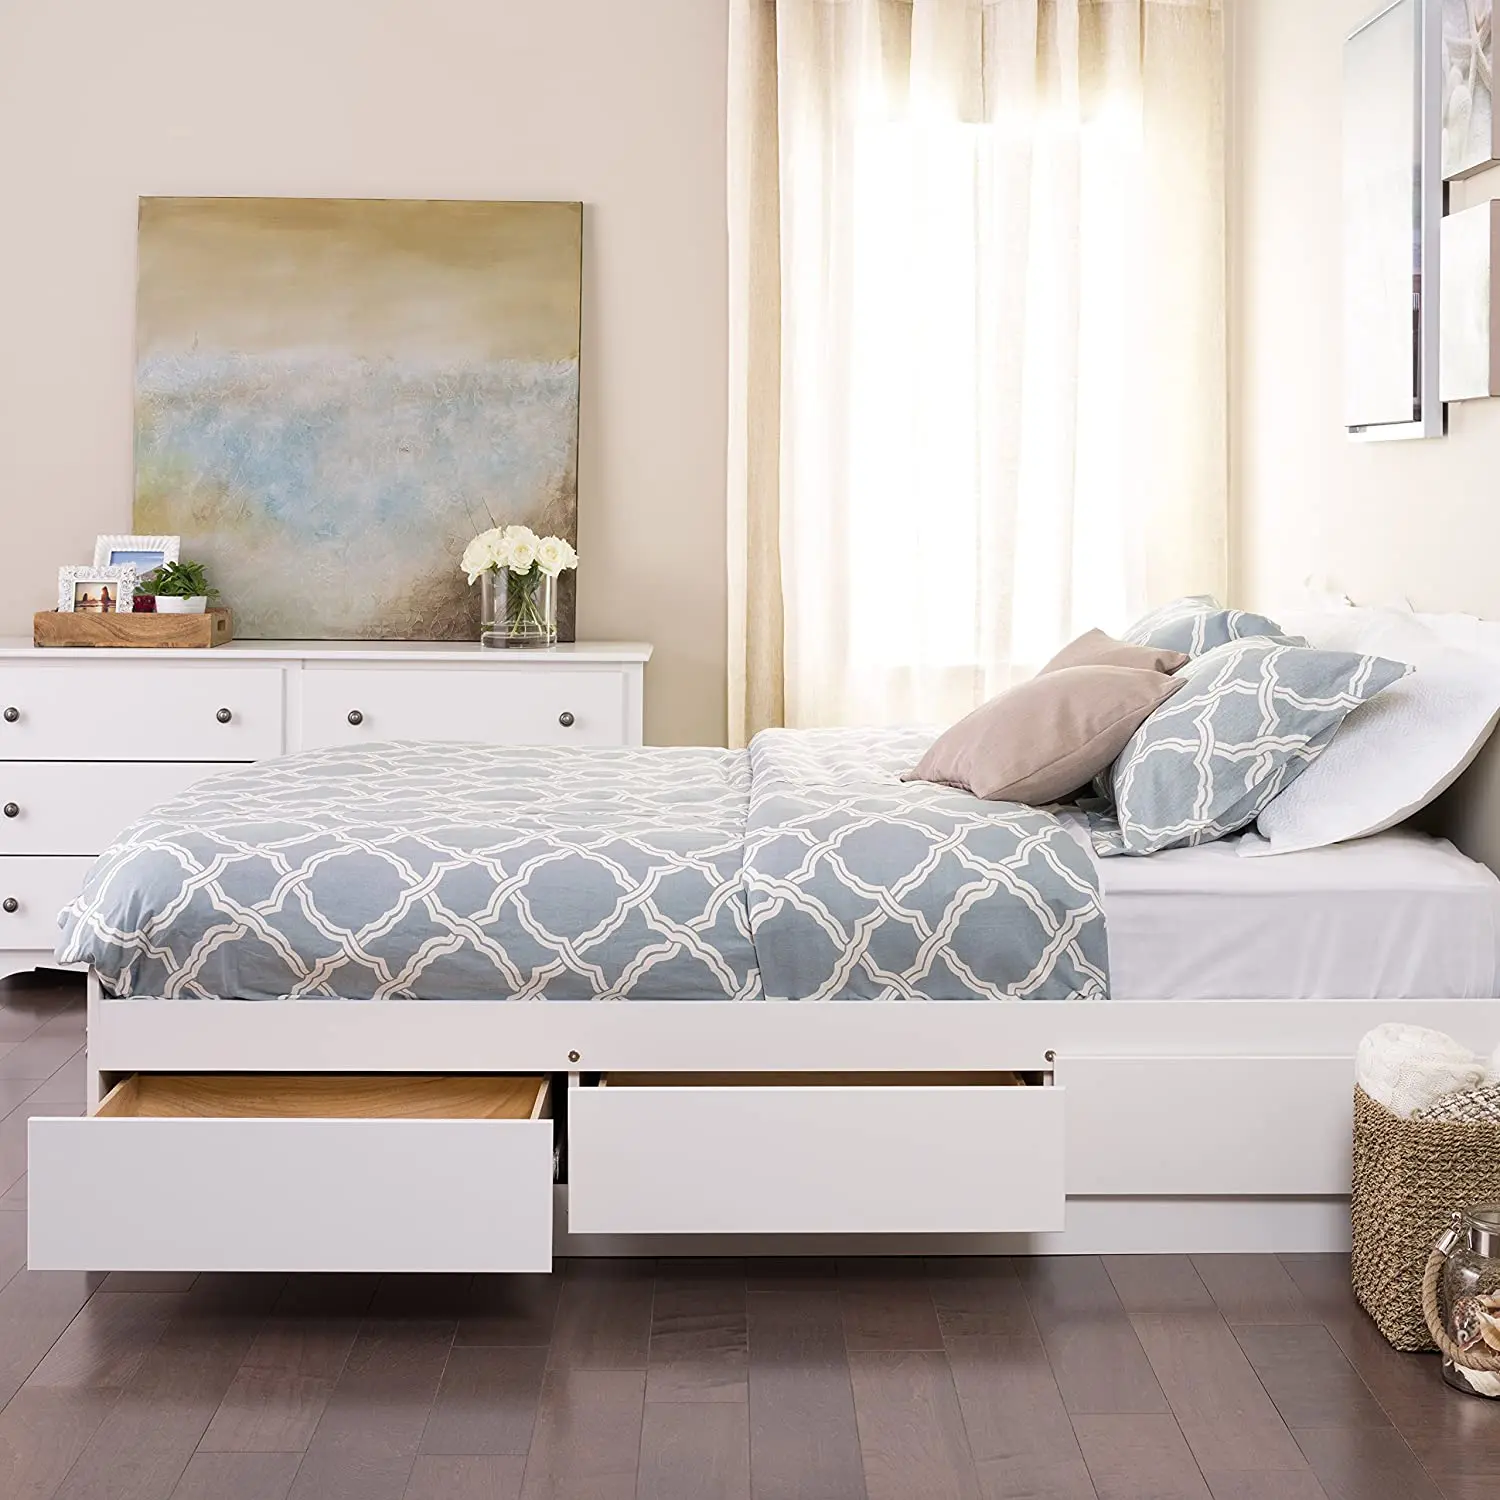 Ambiente Moderno on Instagram: Un dormitorio elegante y moderno 🤩.  Visítanos en nuestro Outlet de Cataño y aprovecha las mejores ofertas de  liquidación en muebles de alta calidad. ¡Te esperamos! 📍CATAÑO:   #